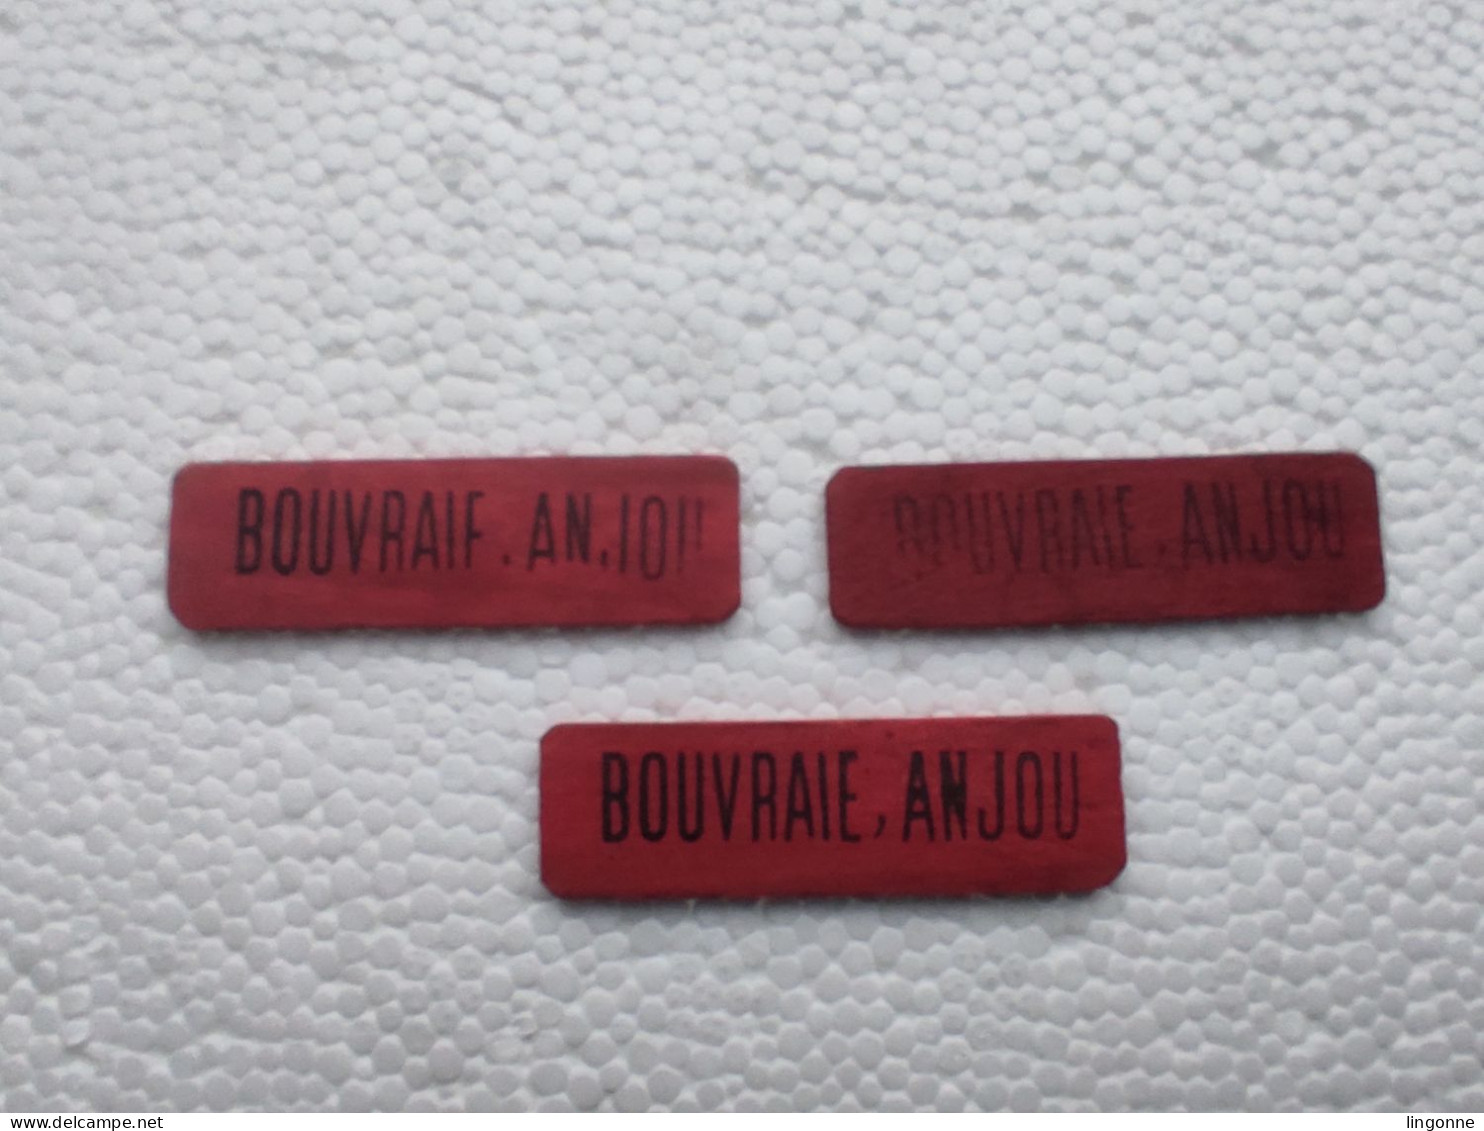 3 Jetons Publicitaires En Bois BOUVRAIE, ANJOU De L'autre Coté VIGNOBLES ET CAVES (rouge) - Alcools